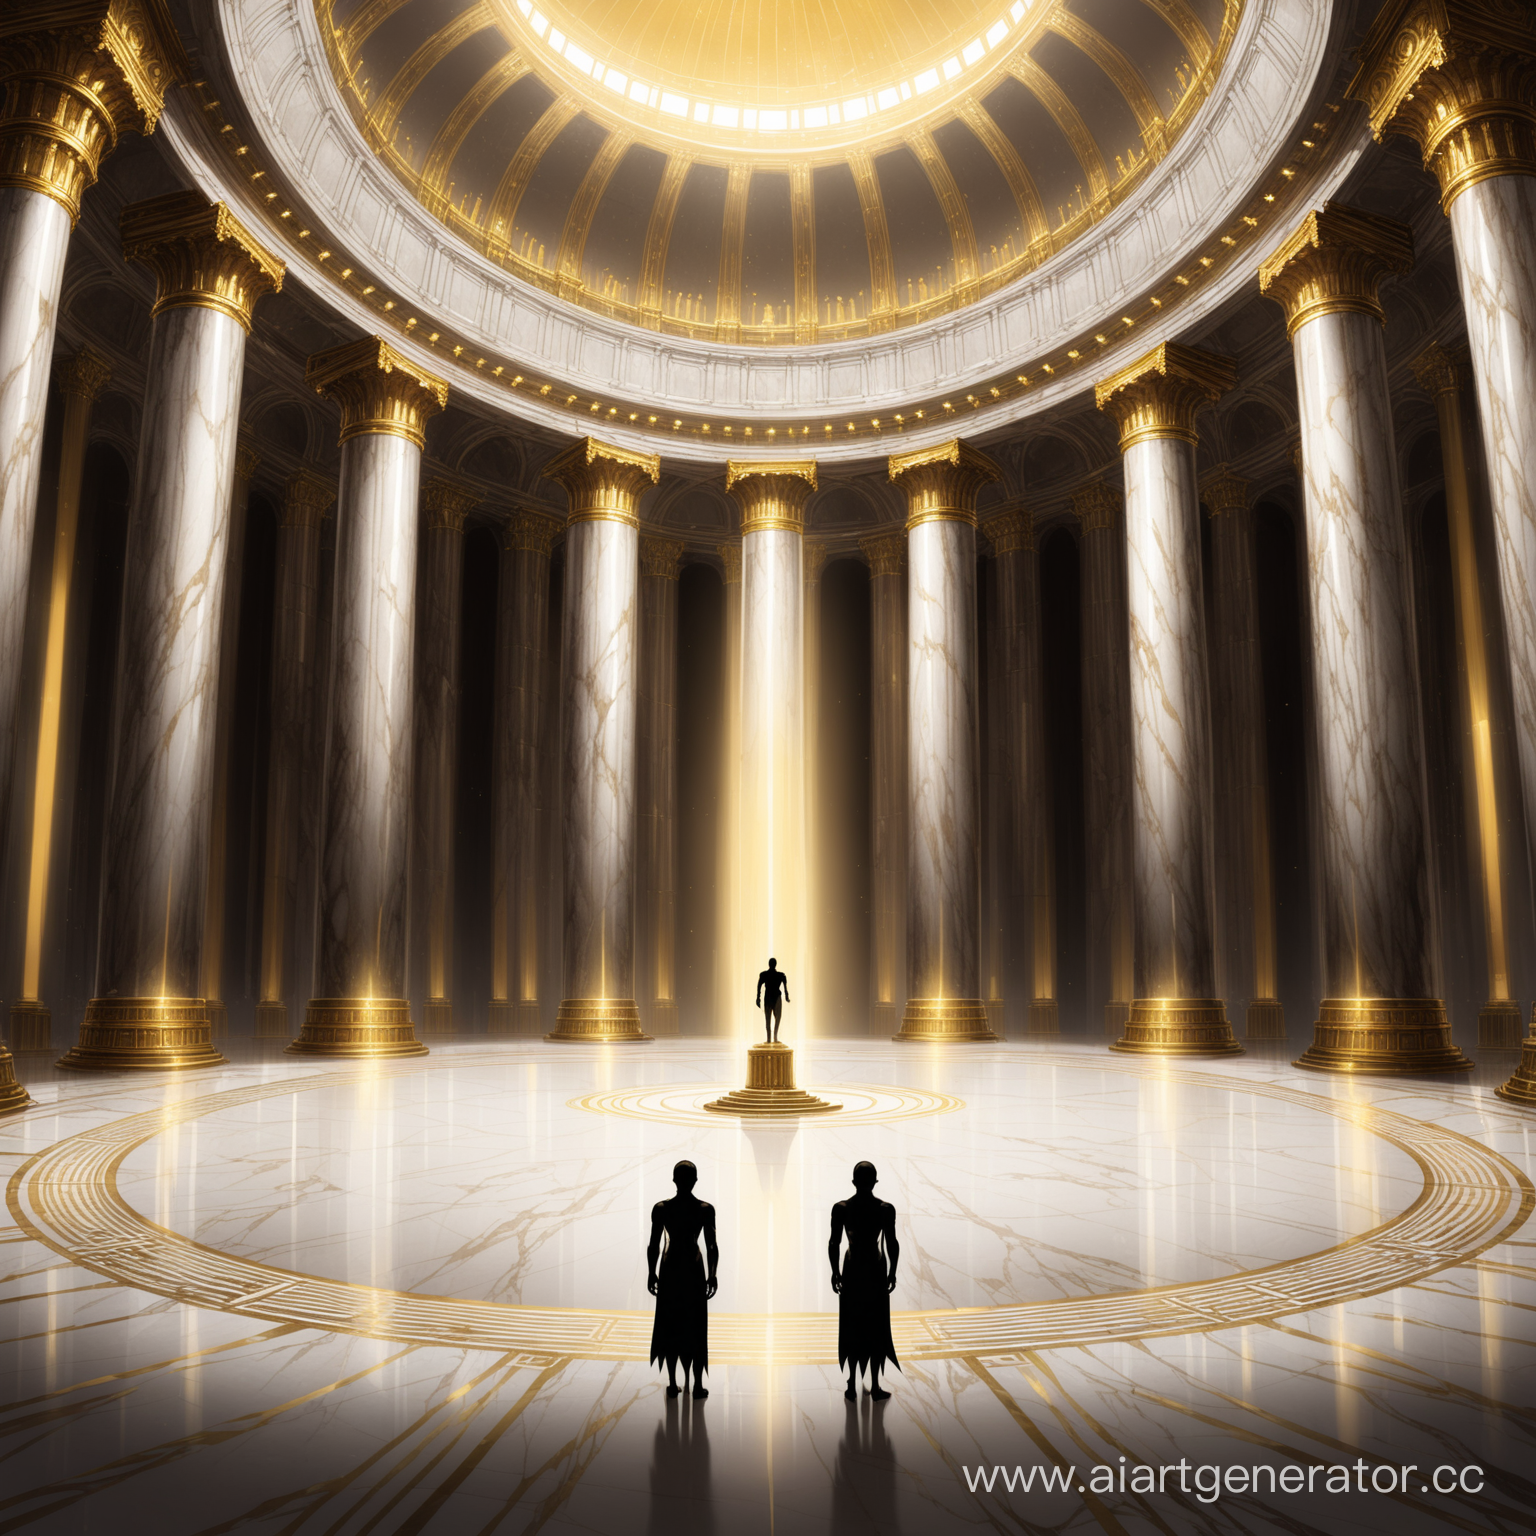 Огромный круглый мраморный зал, с золотыми колонами, в центре которого виднееться сиуэт четырех рукого гуманоида